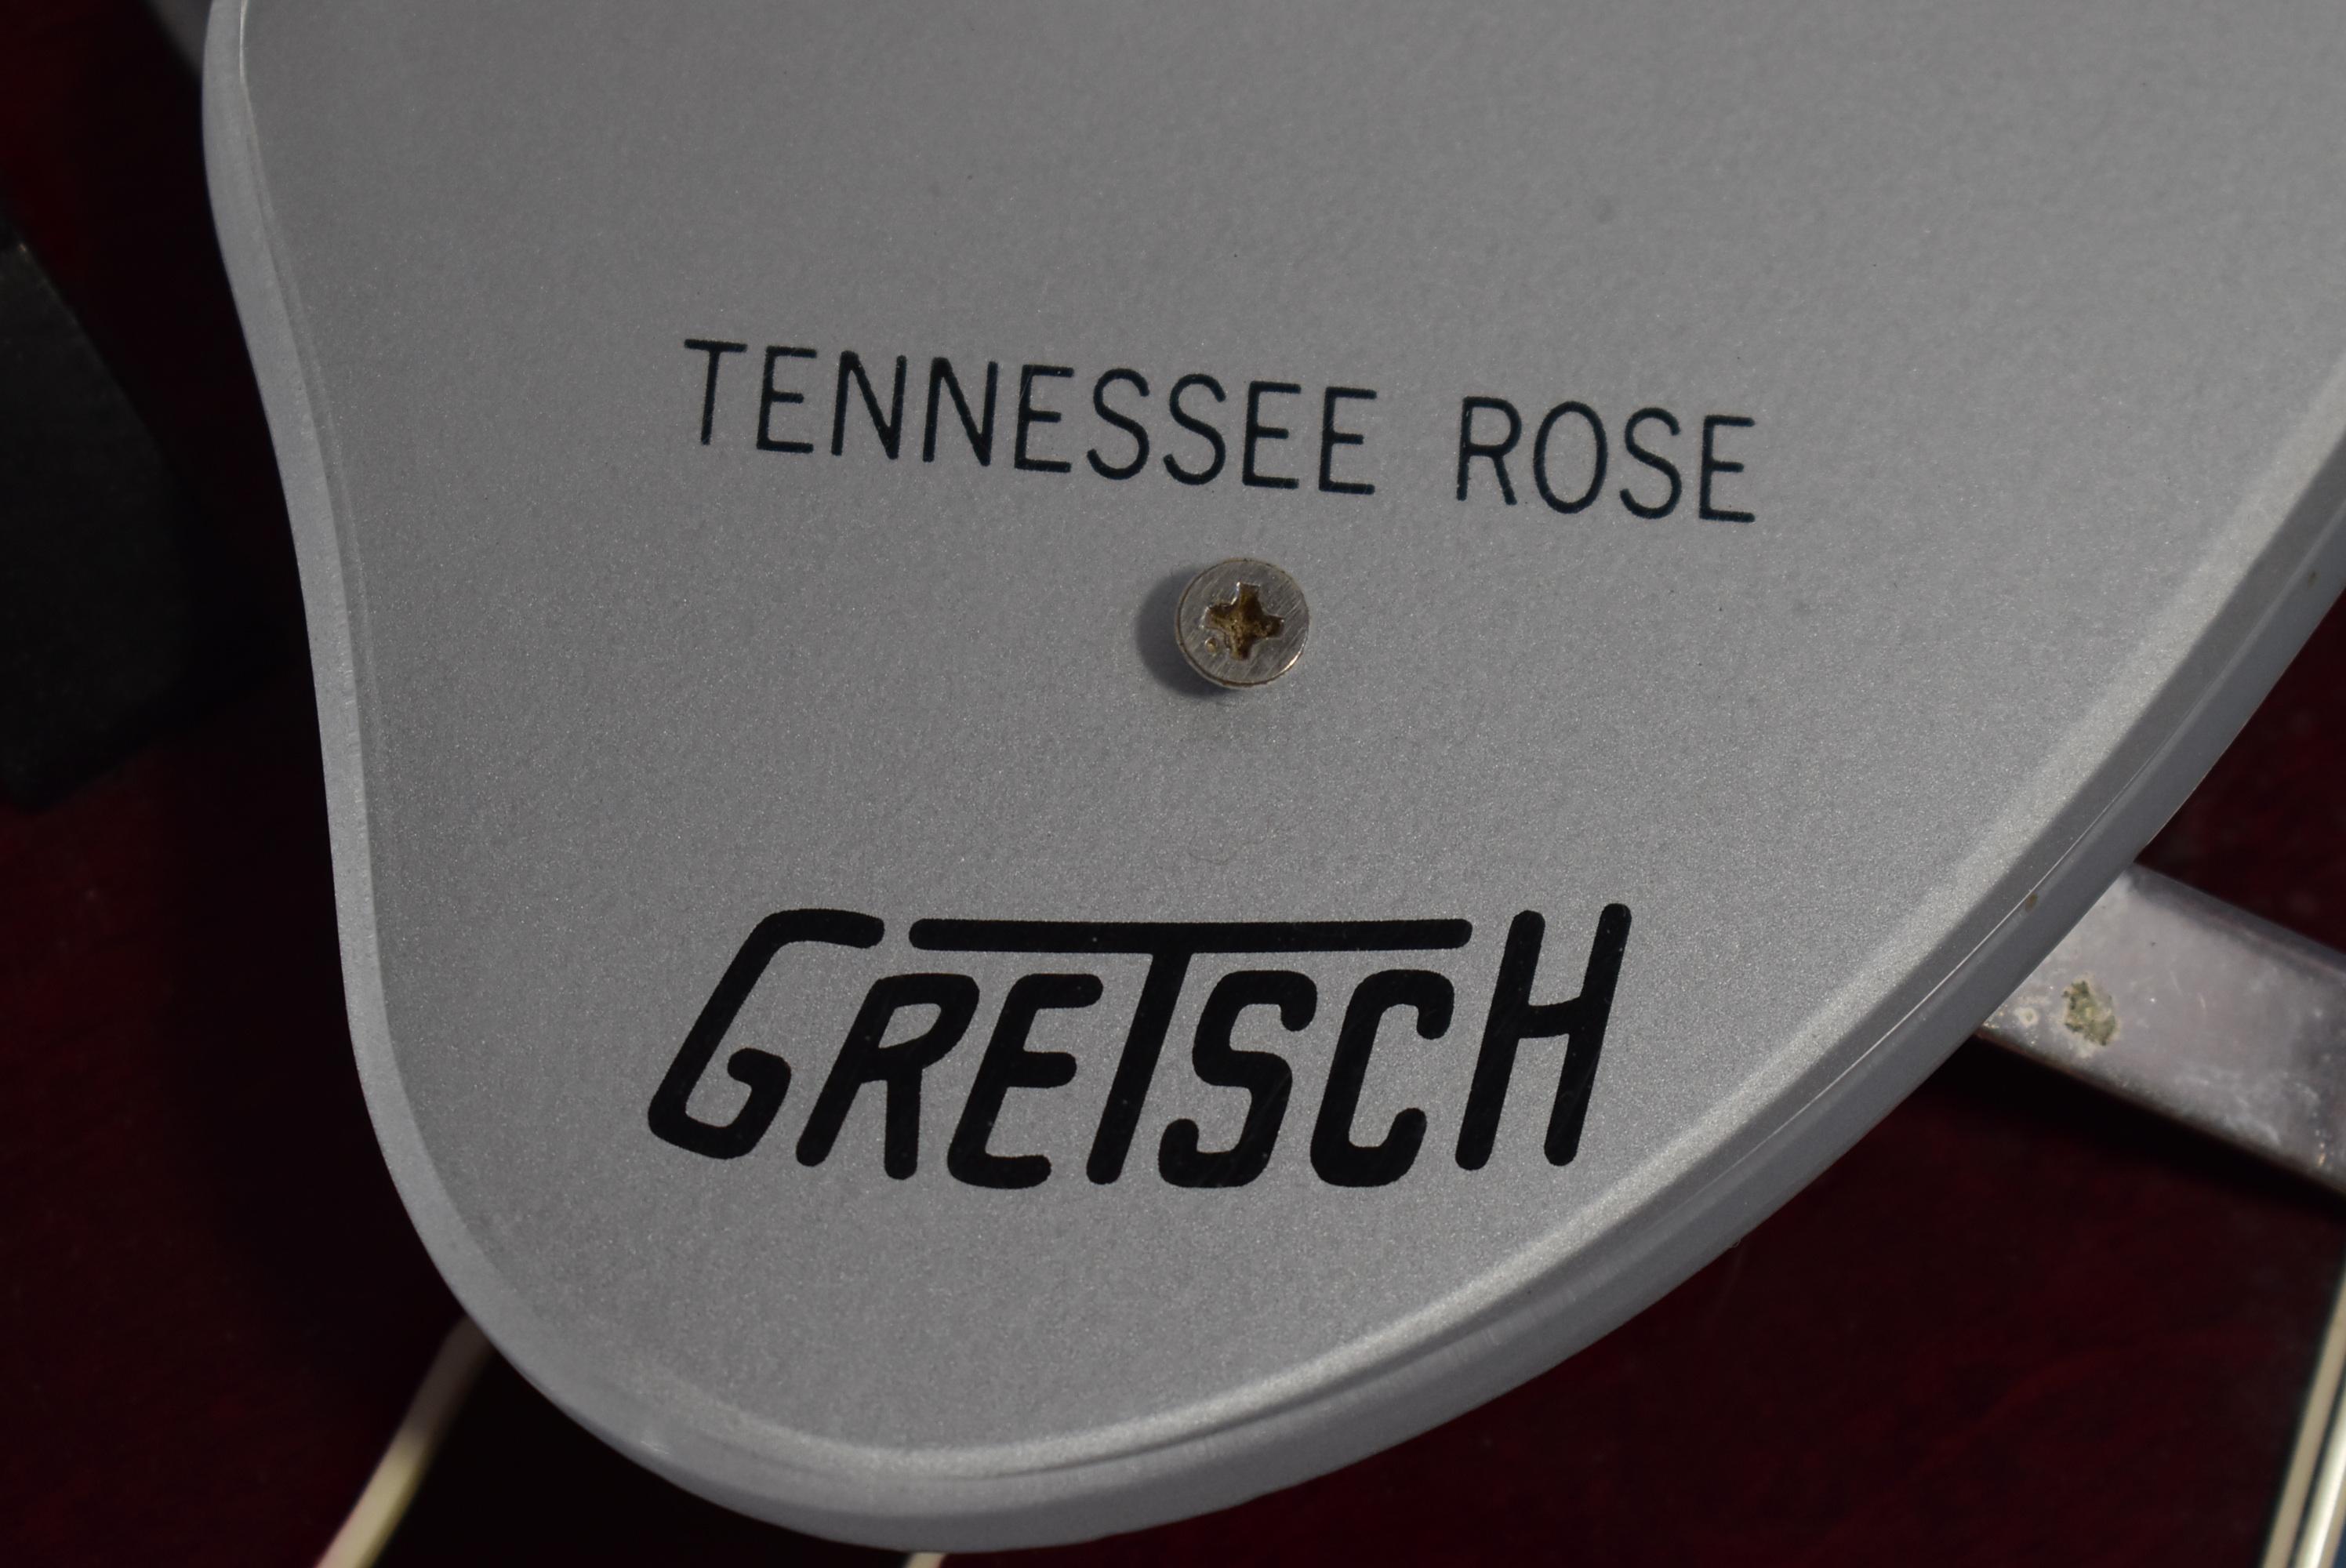 GRETSCH TENNESSEE ROSE 6119 GUITAR!!!